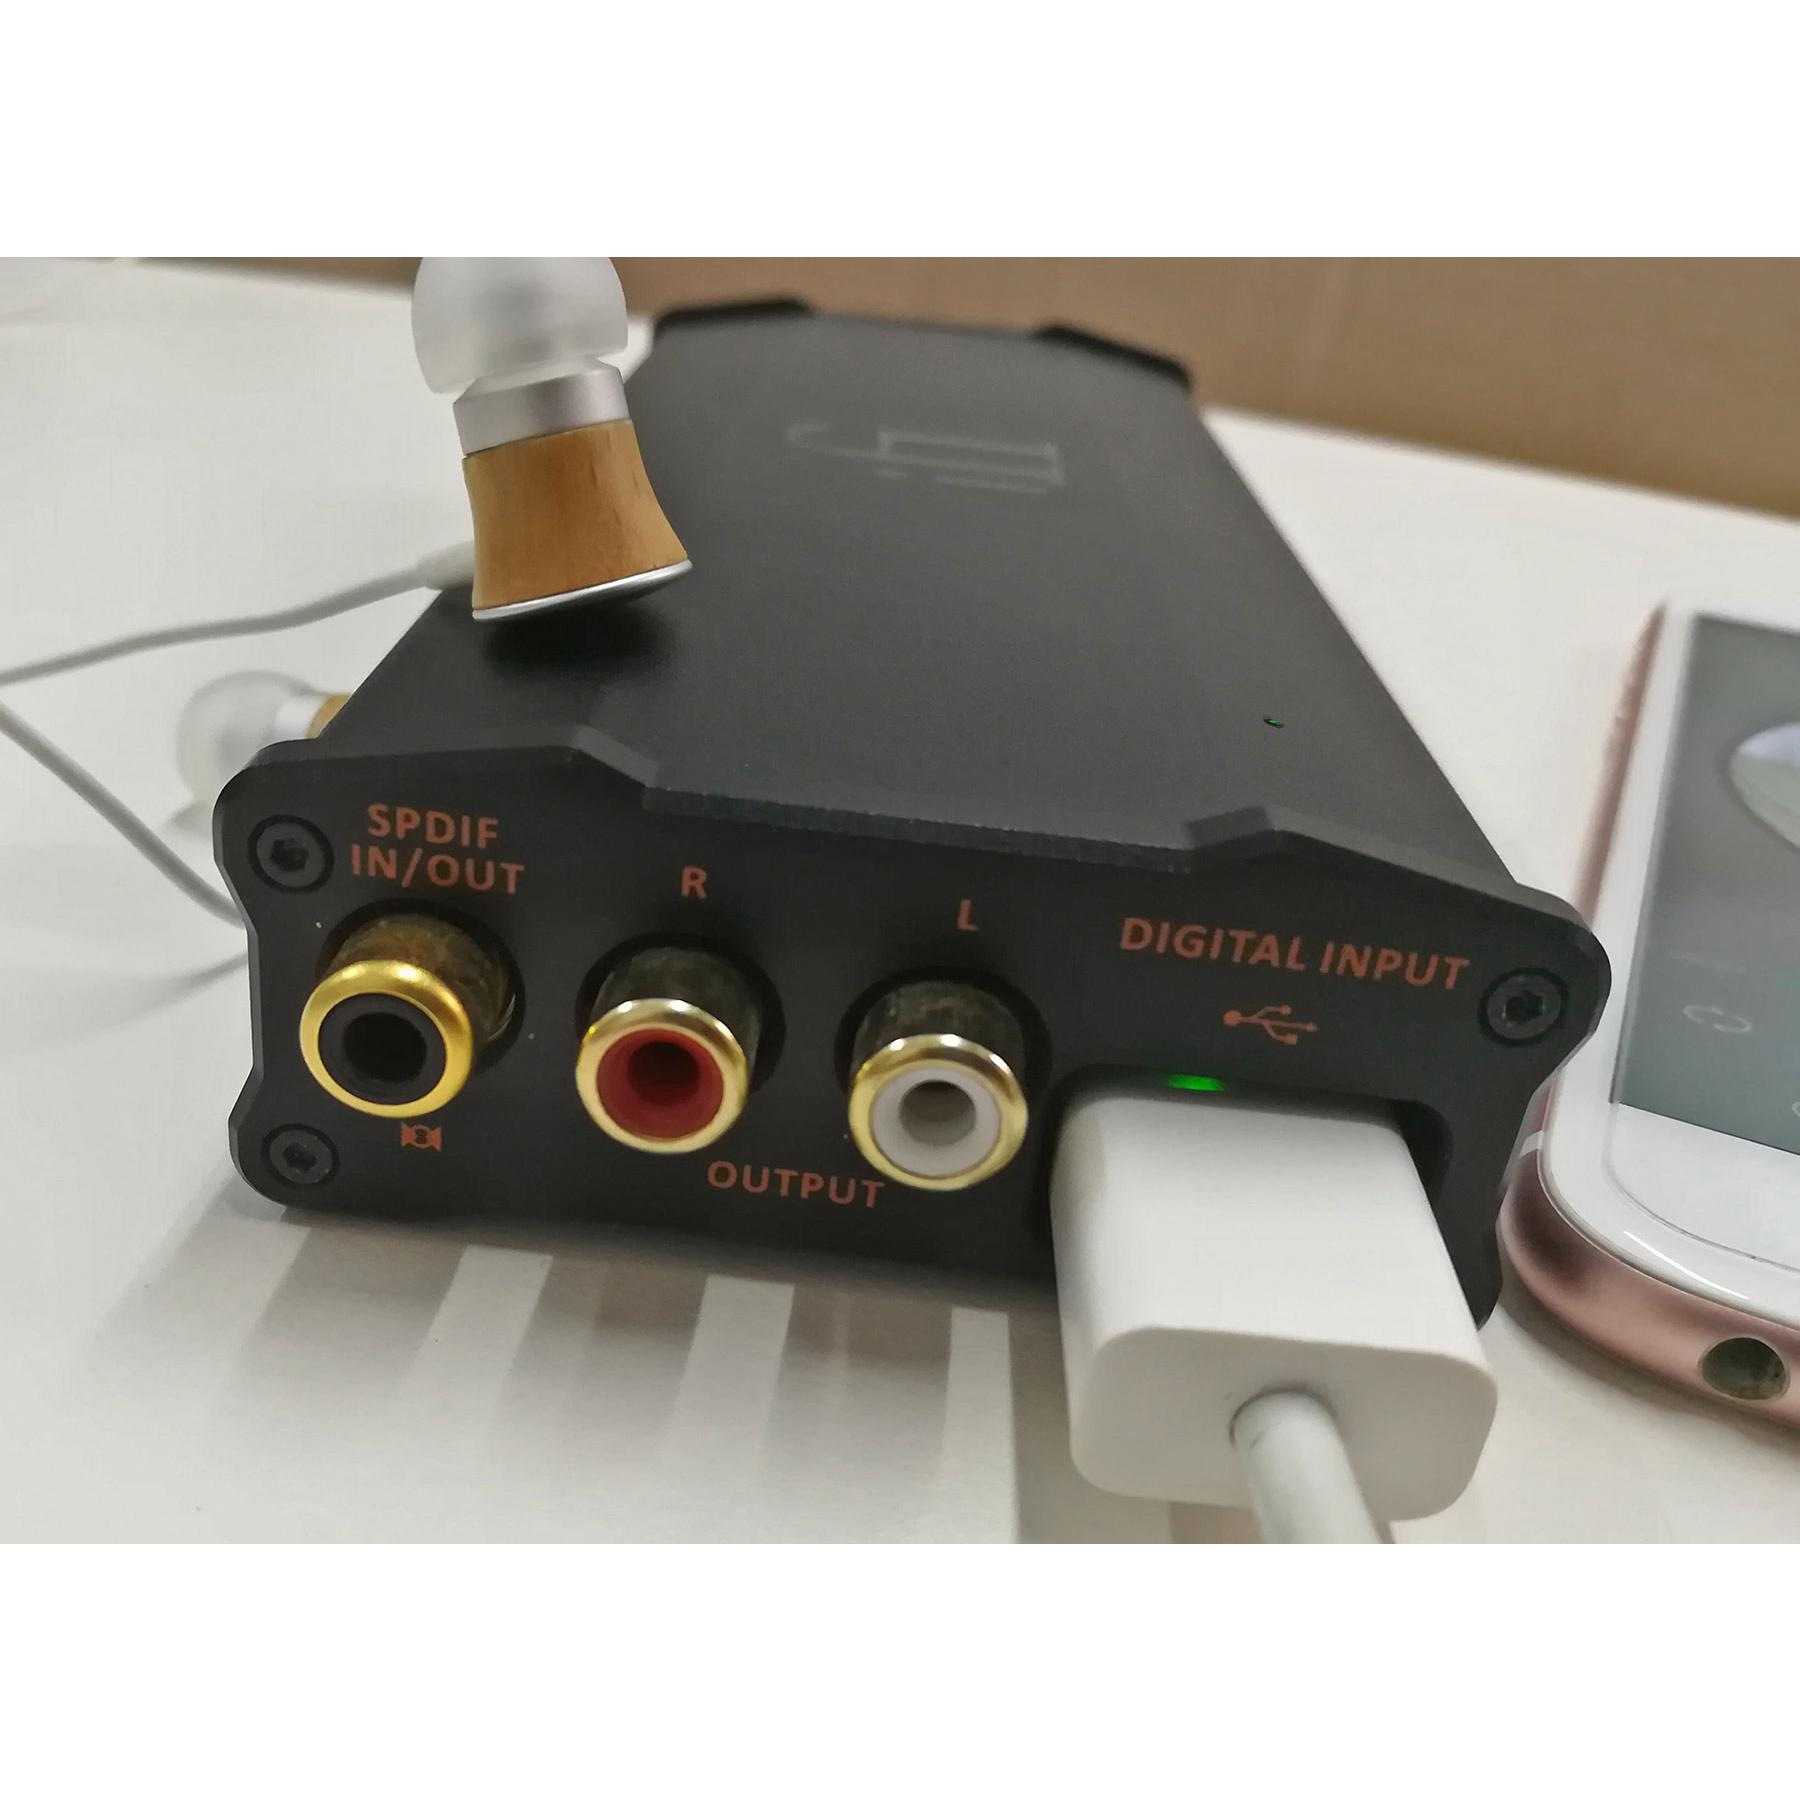 Ifi audio nano idsd black label - portable dac/amp - review